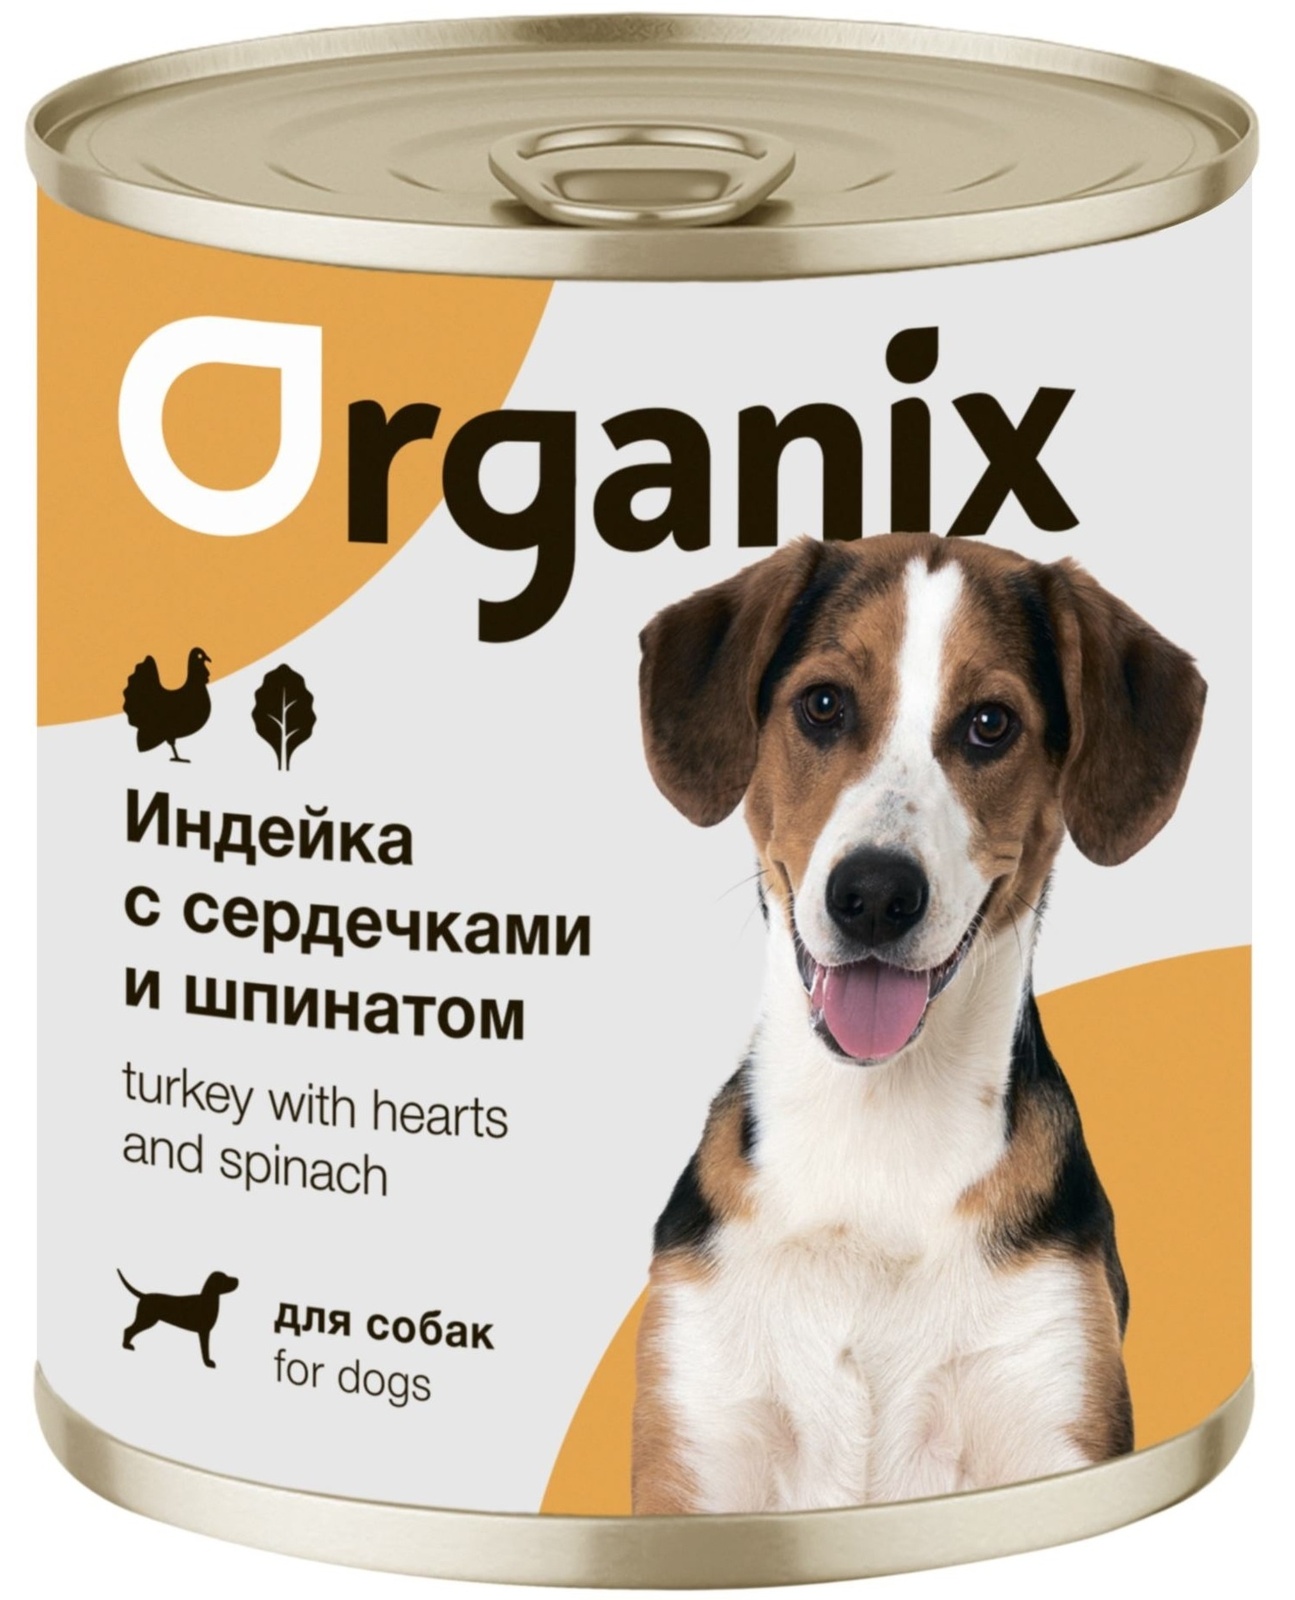 Organix консервы Organix консервы для собак Индейка с сердечками и шпинатом (100 г) organix консервы organix монобелковые премиум консервы для собак с уткой 100 г